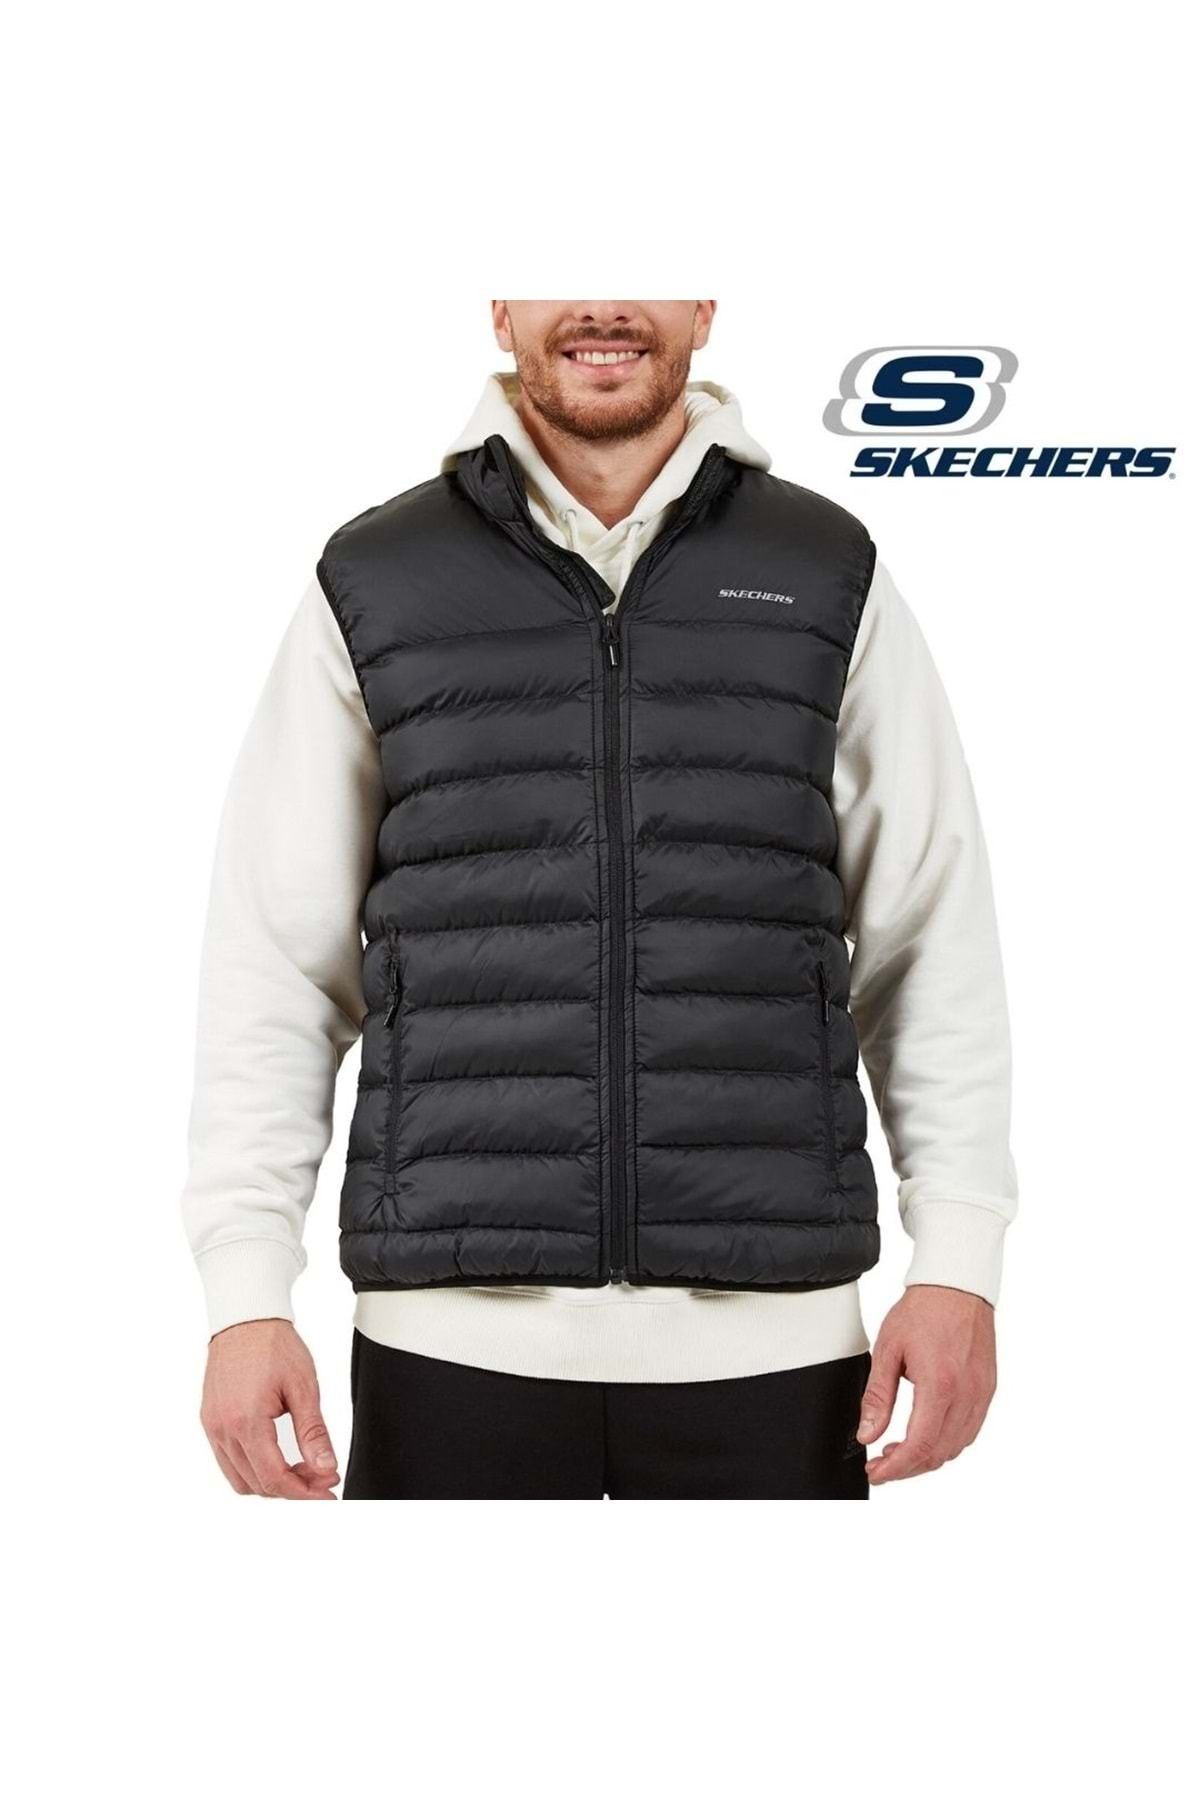 Skechers M Essential Vest S202174- Erkek Yelek Siyah